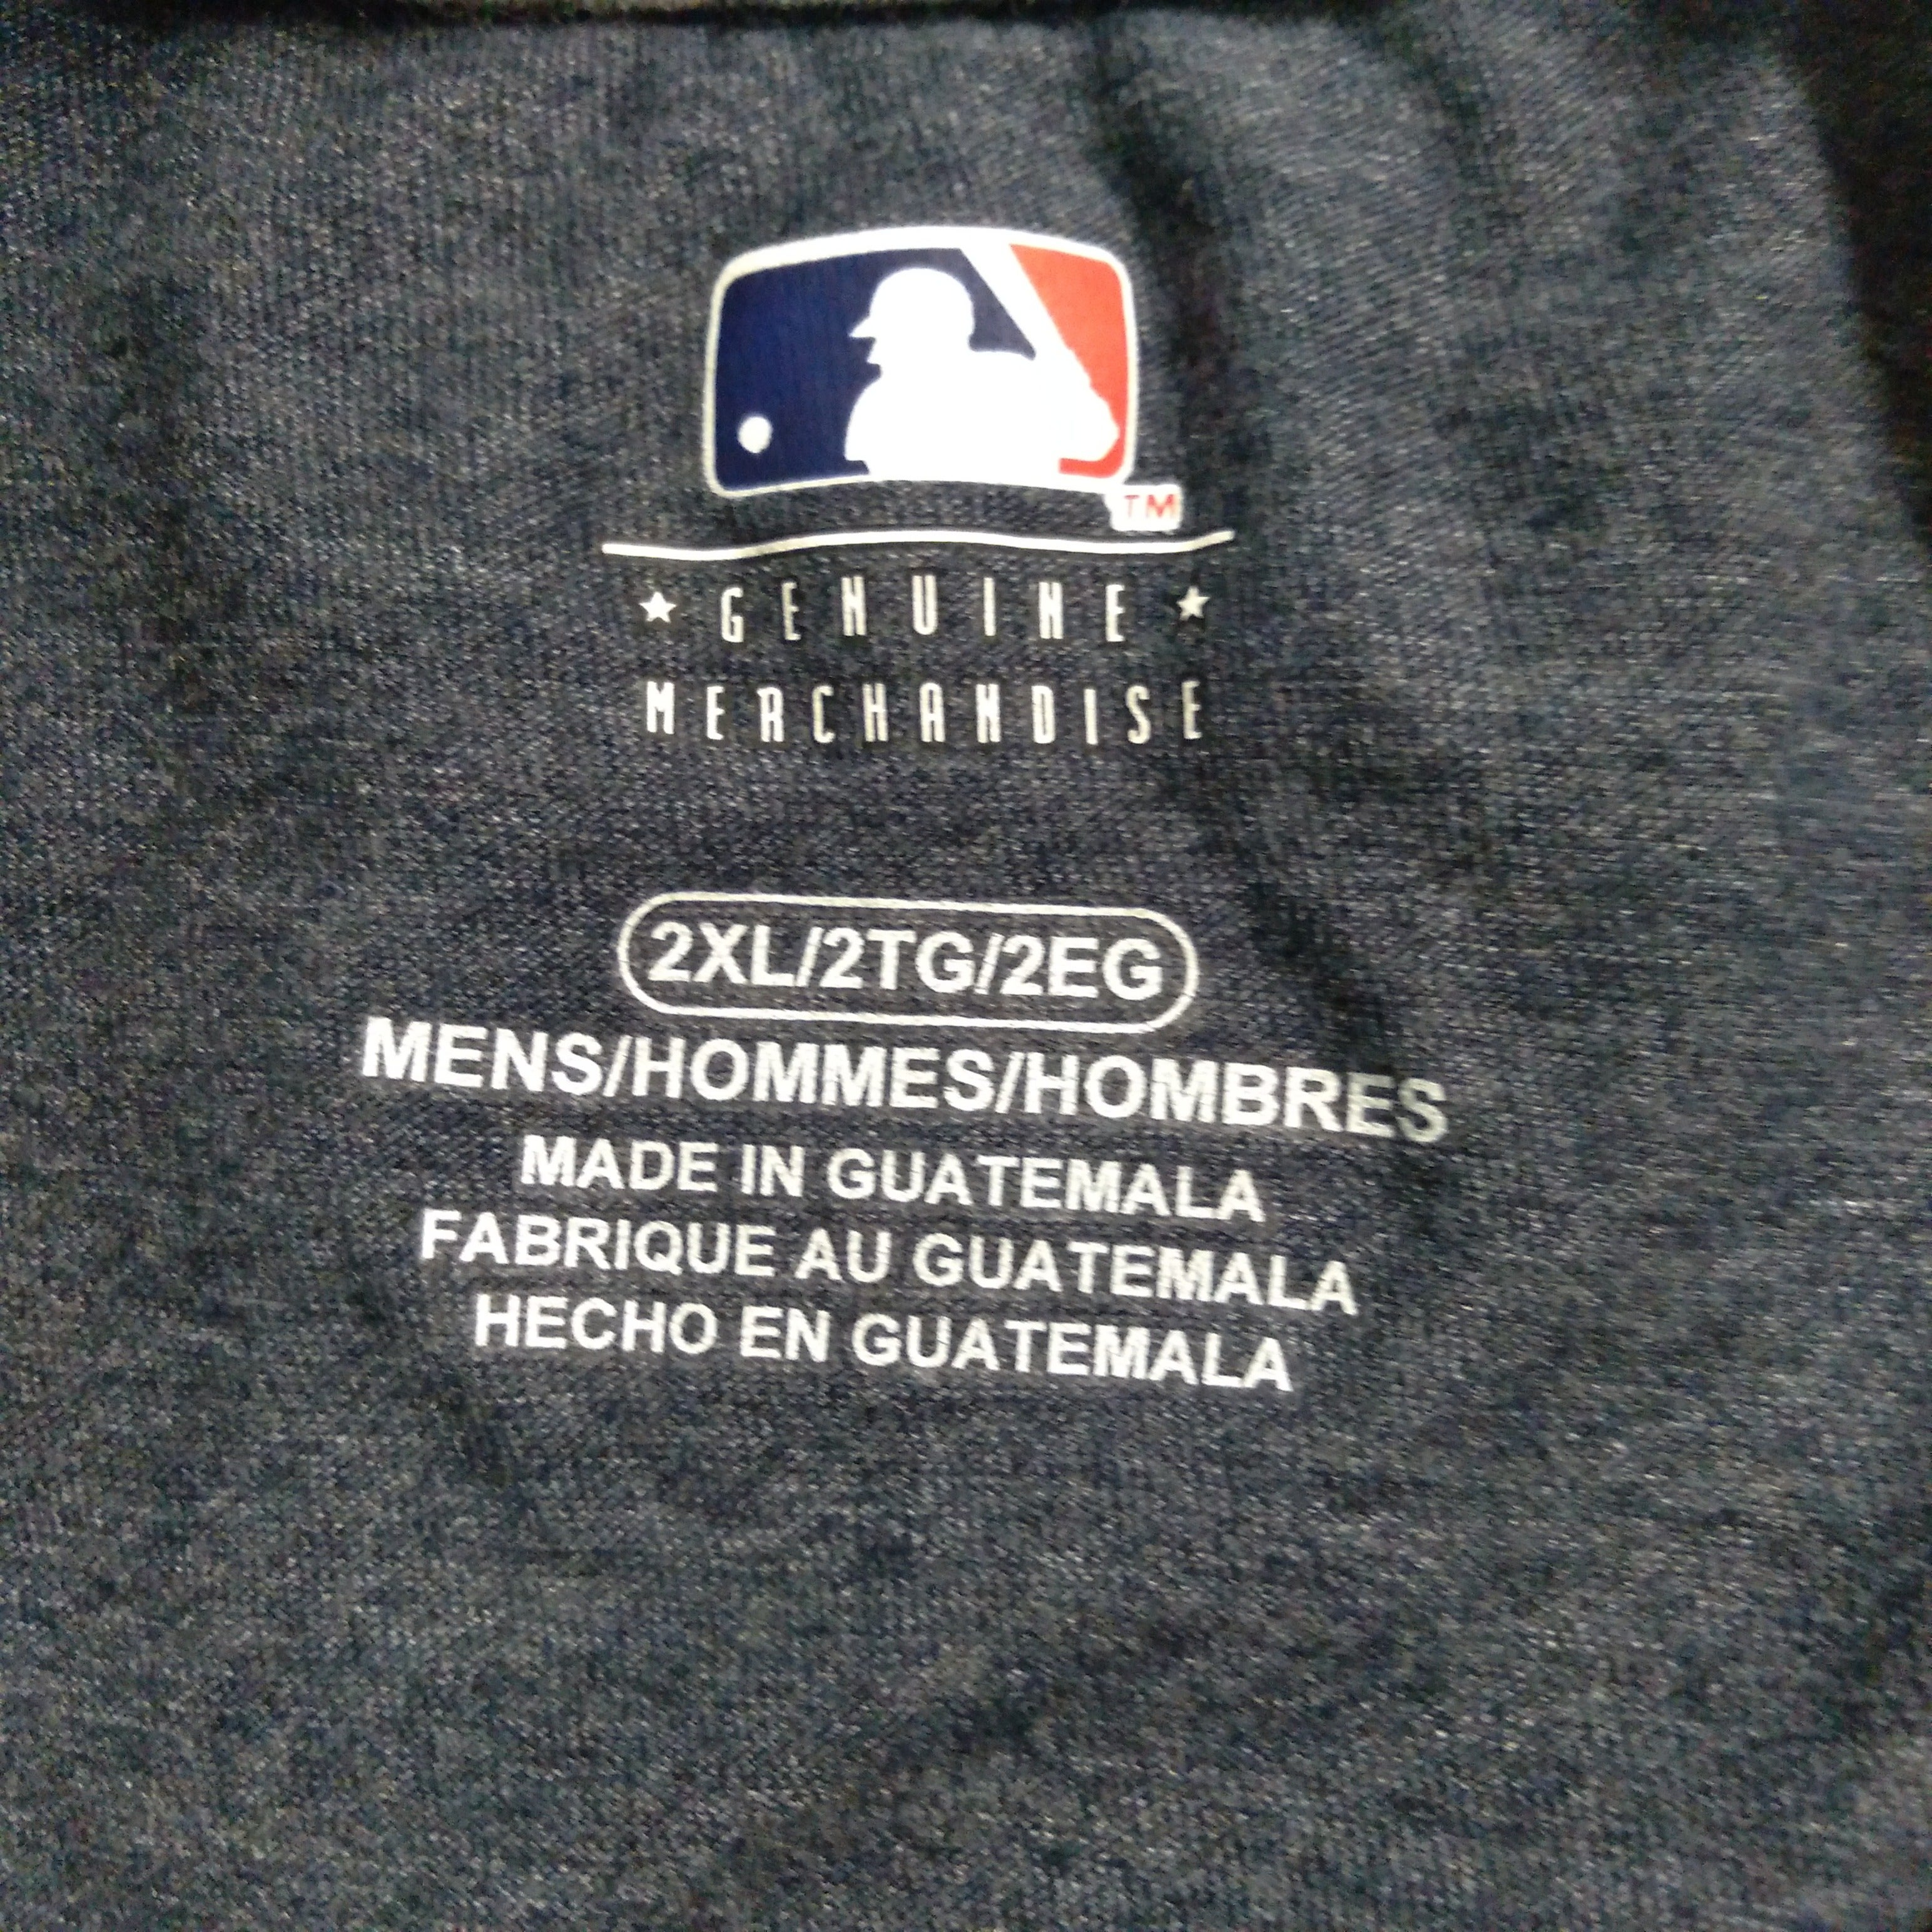 Chi tiết hơn 75 về genuine merchandise MLB mới nhất  cdgdbentreeduvn